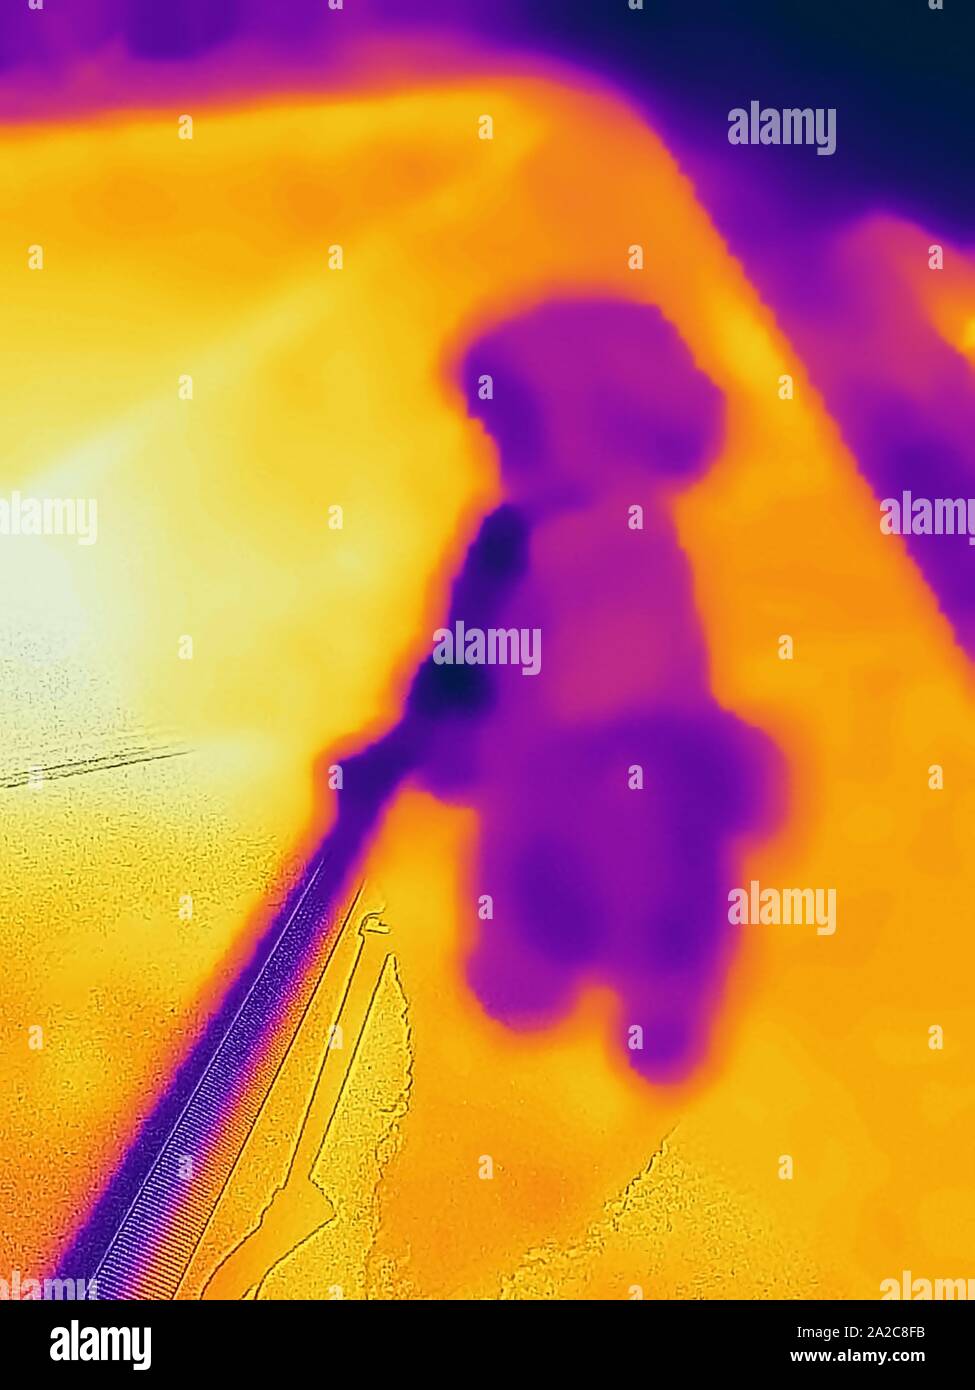 Wärmebild der Wärmebildkamera mit Lichtbereichen, die höheren Temperaturen entsprechen und einen Haushund zeigen, der in der Mittagssonne auf einem heißen Betonstreifen auf dem Bürgersteig zu Fuß geführt wird. Dies zeigt das Verletzungsrisiko für Haustiere durch heiße Straßenbeläge, San Ramon, Kalifornien, 2. September 2019. () Stockfoto